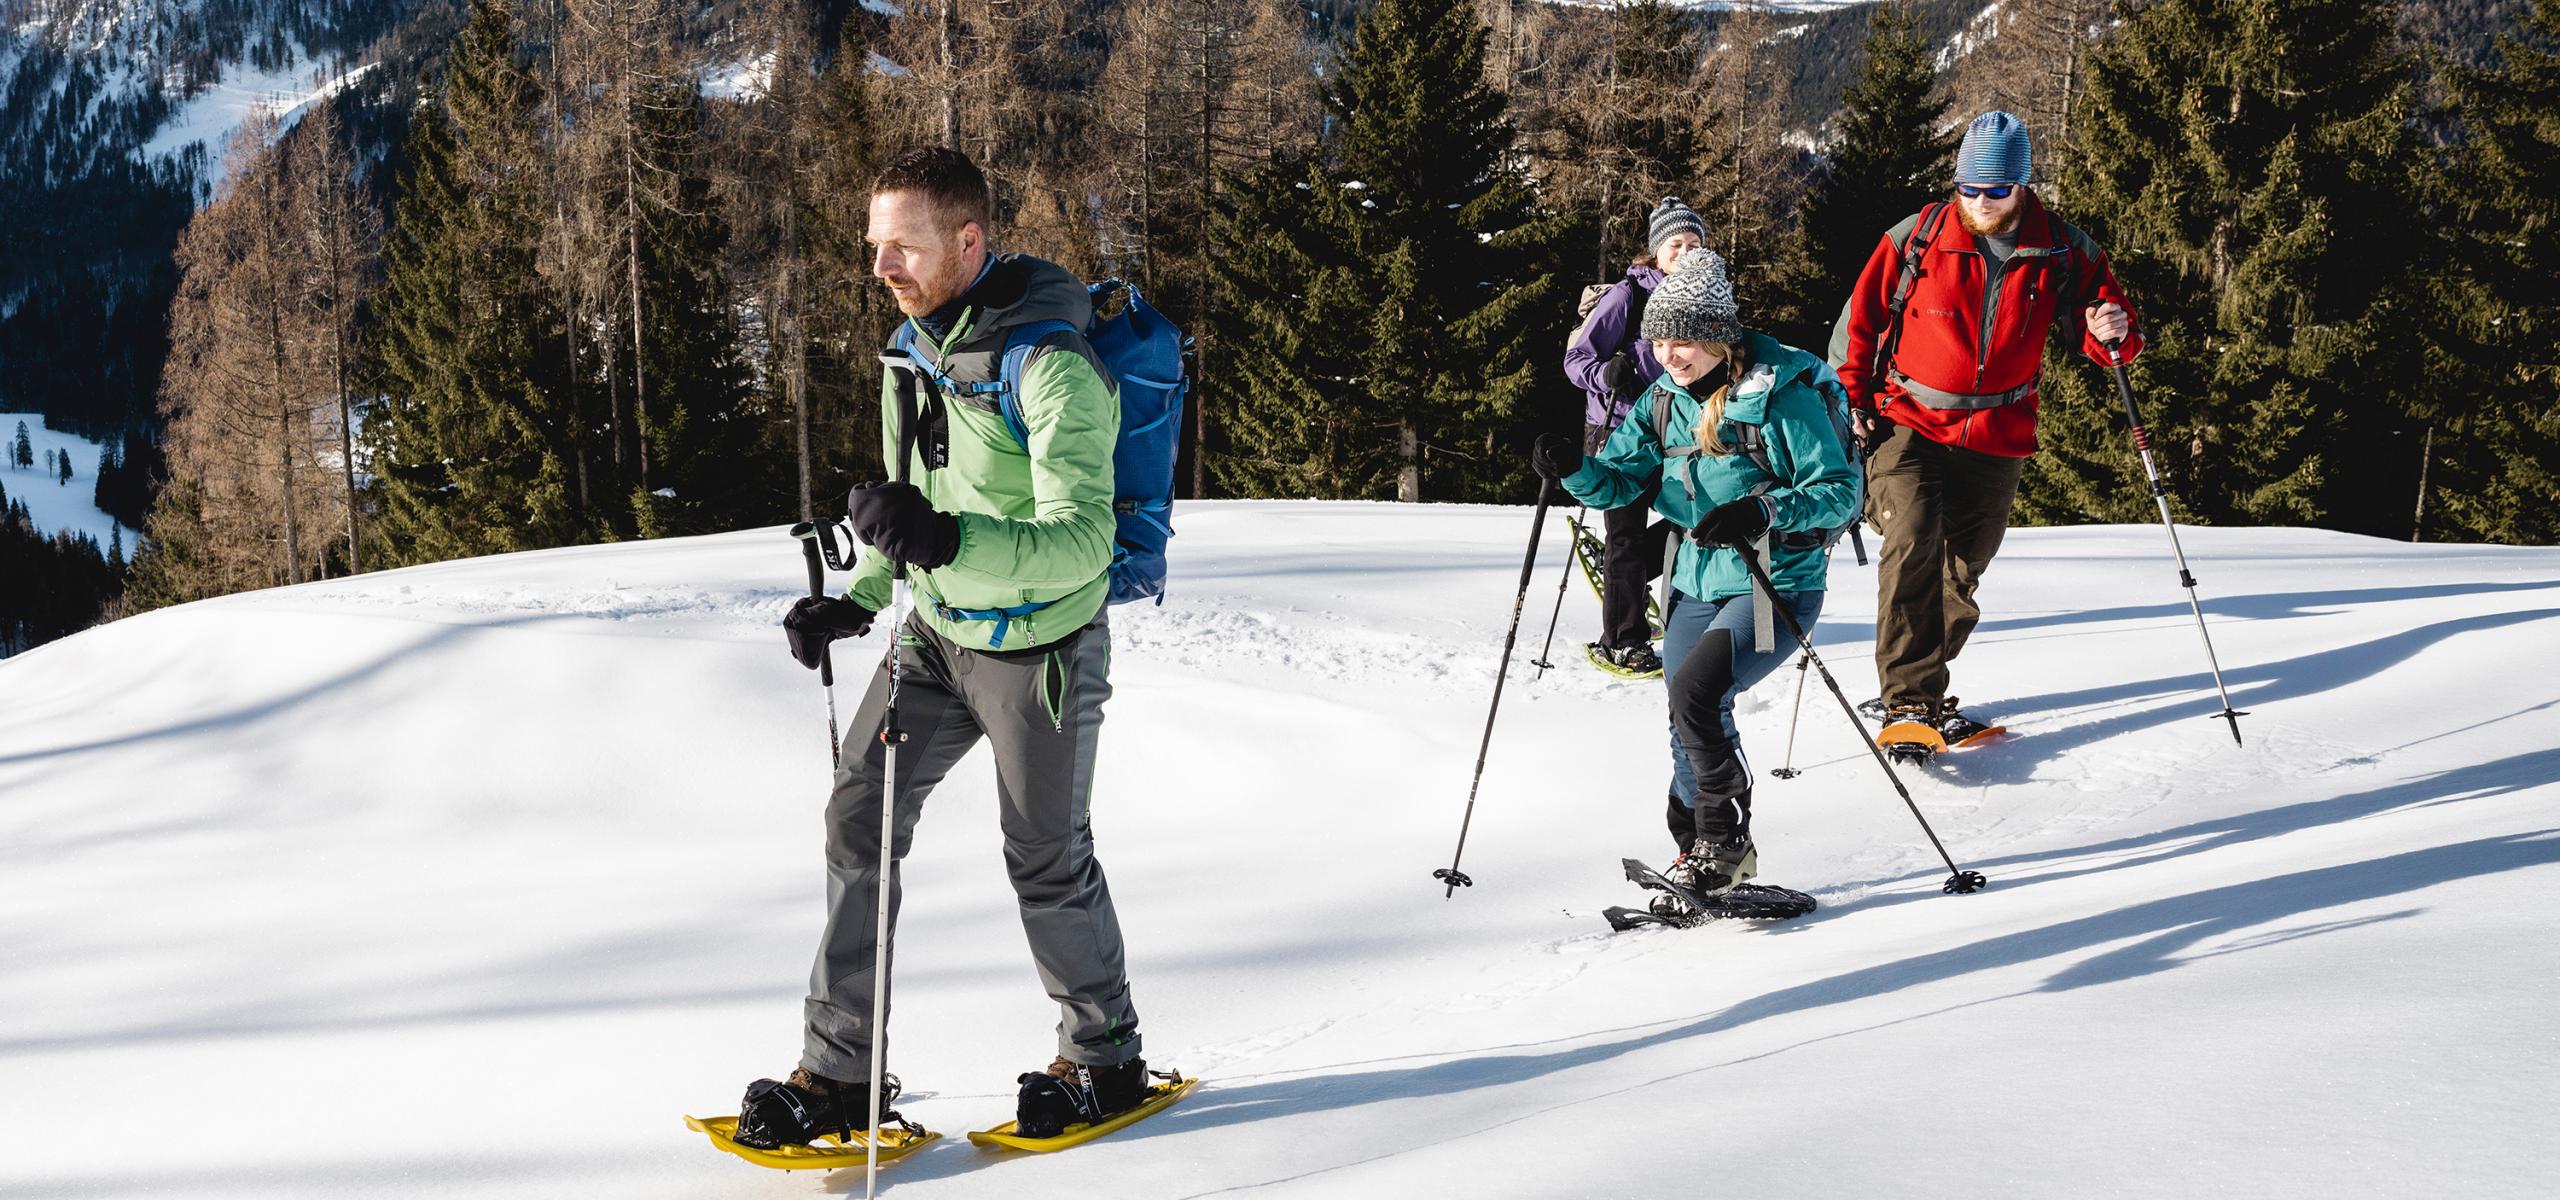 Strážce národního parku doprovází tři dospělé na túře na sněžnicích